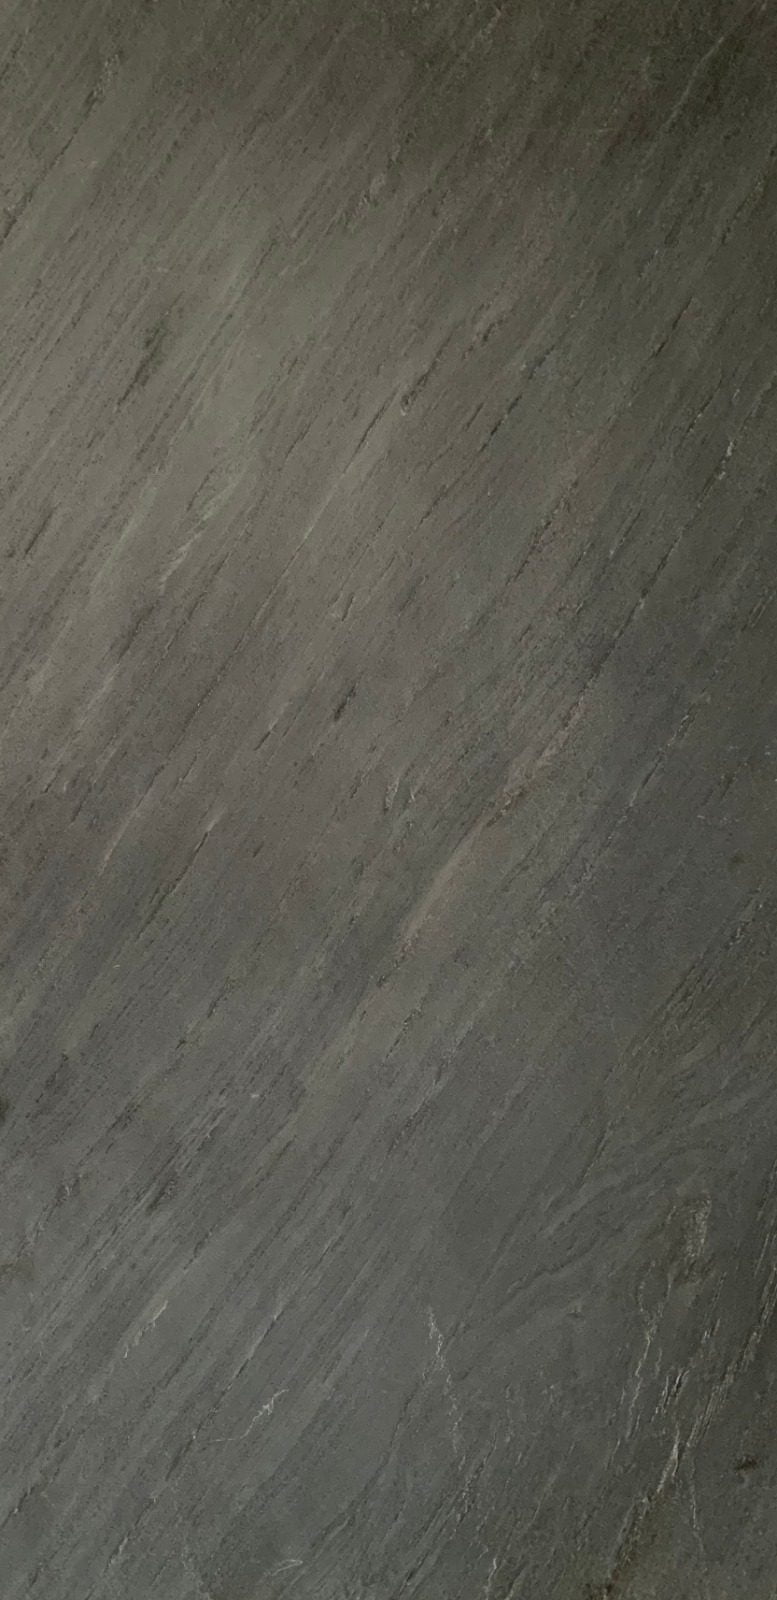 Trappenhuis Naar behoren fout Natuursteen Wandpaneel XL Platinum Zwart - Elk Paneel Uniek -  260x120x0,25cm -